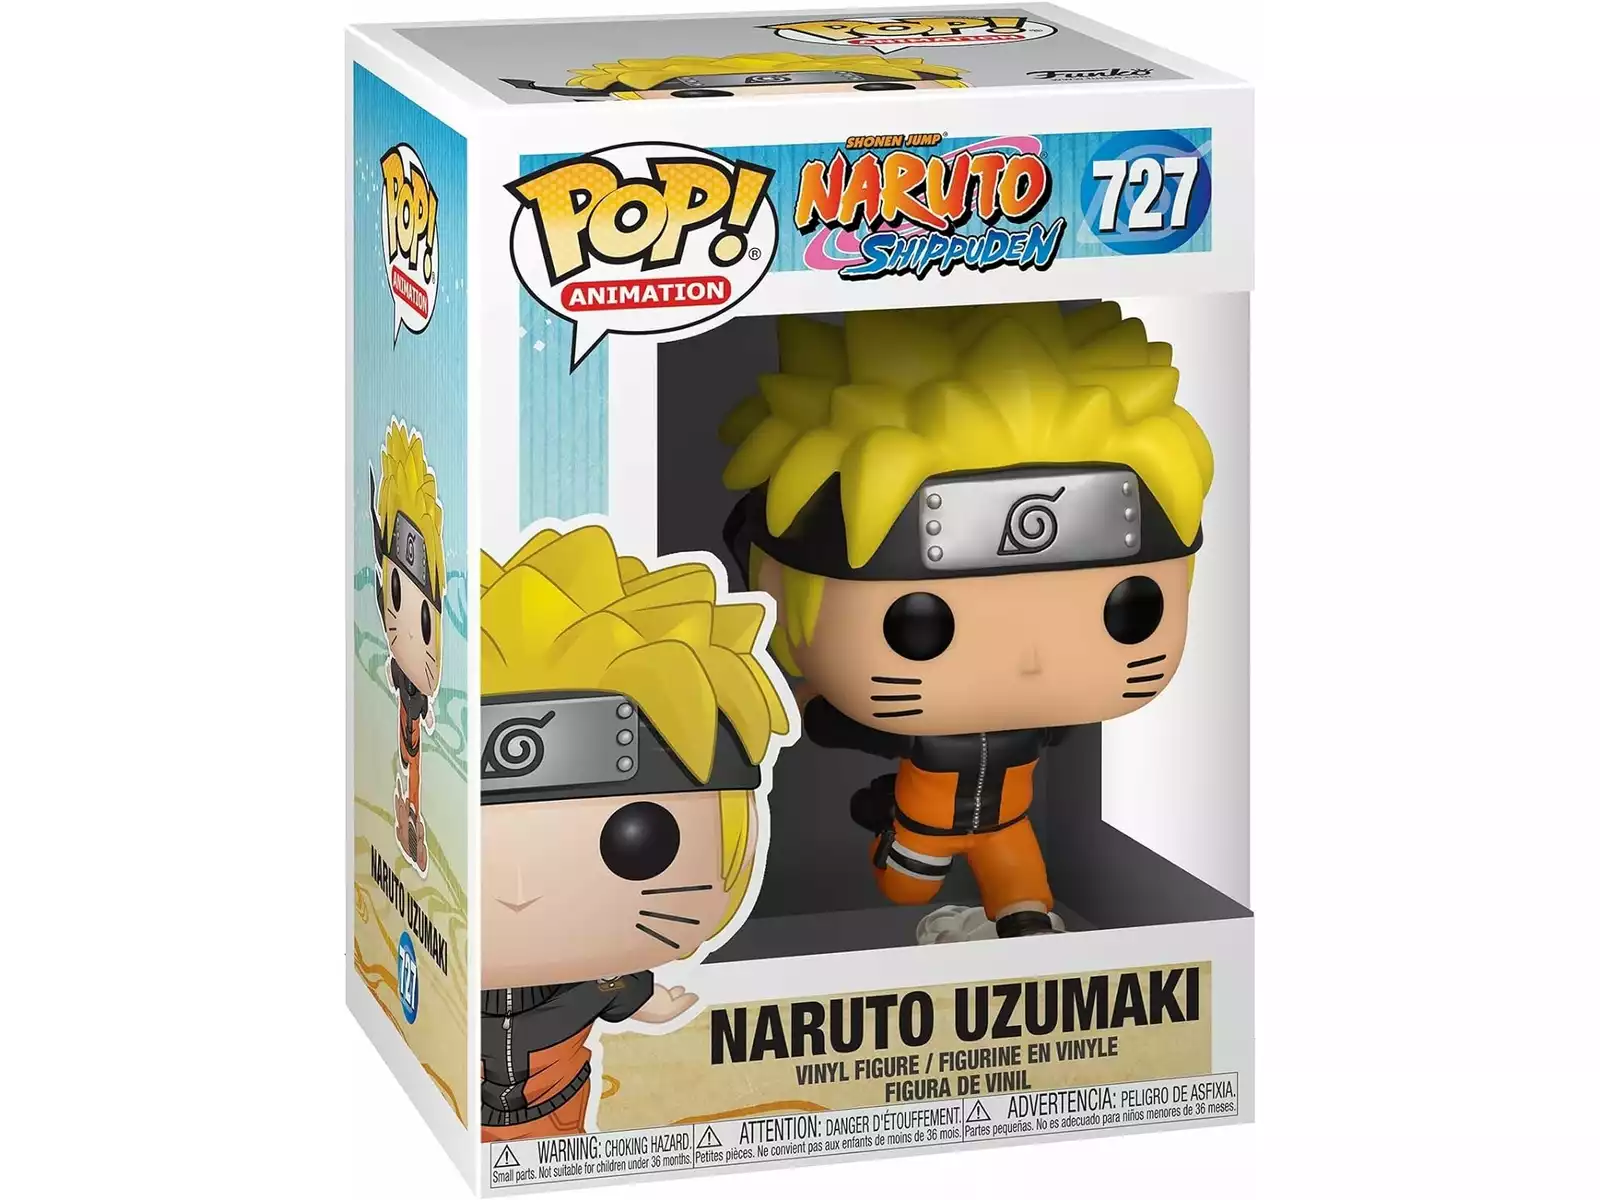 Naruto Figura Anime Heroes Naruto Rikudou Bandai 36908 - Juguetilandia